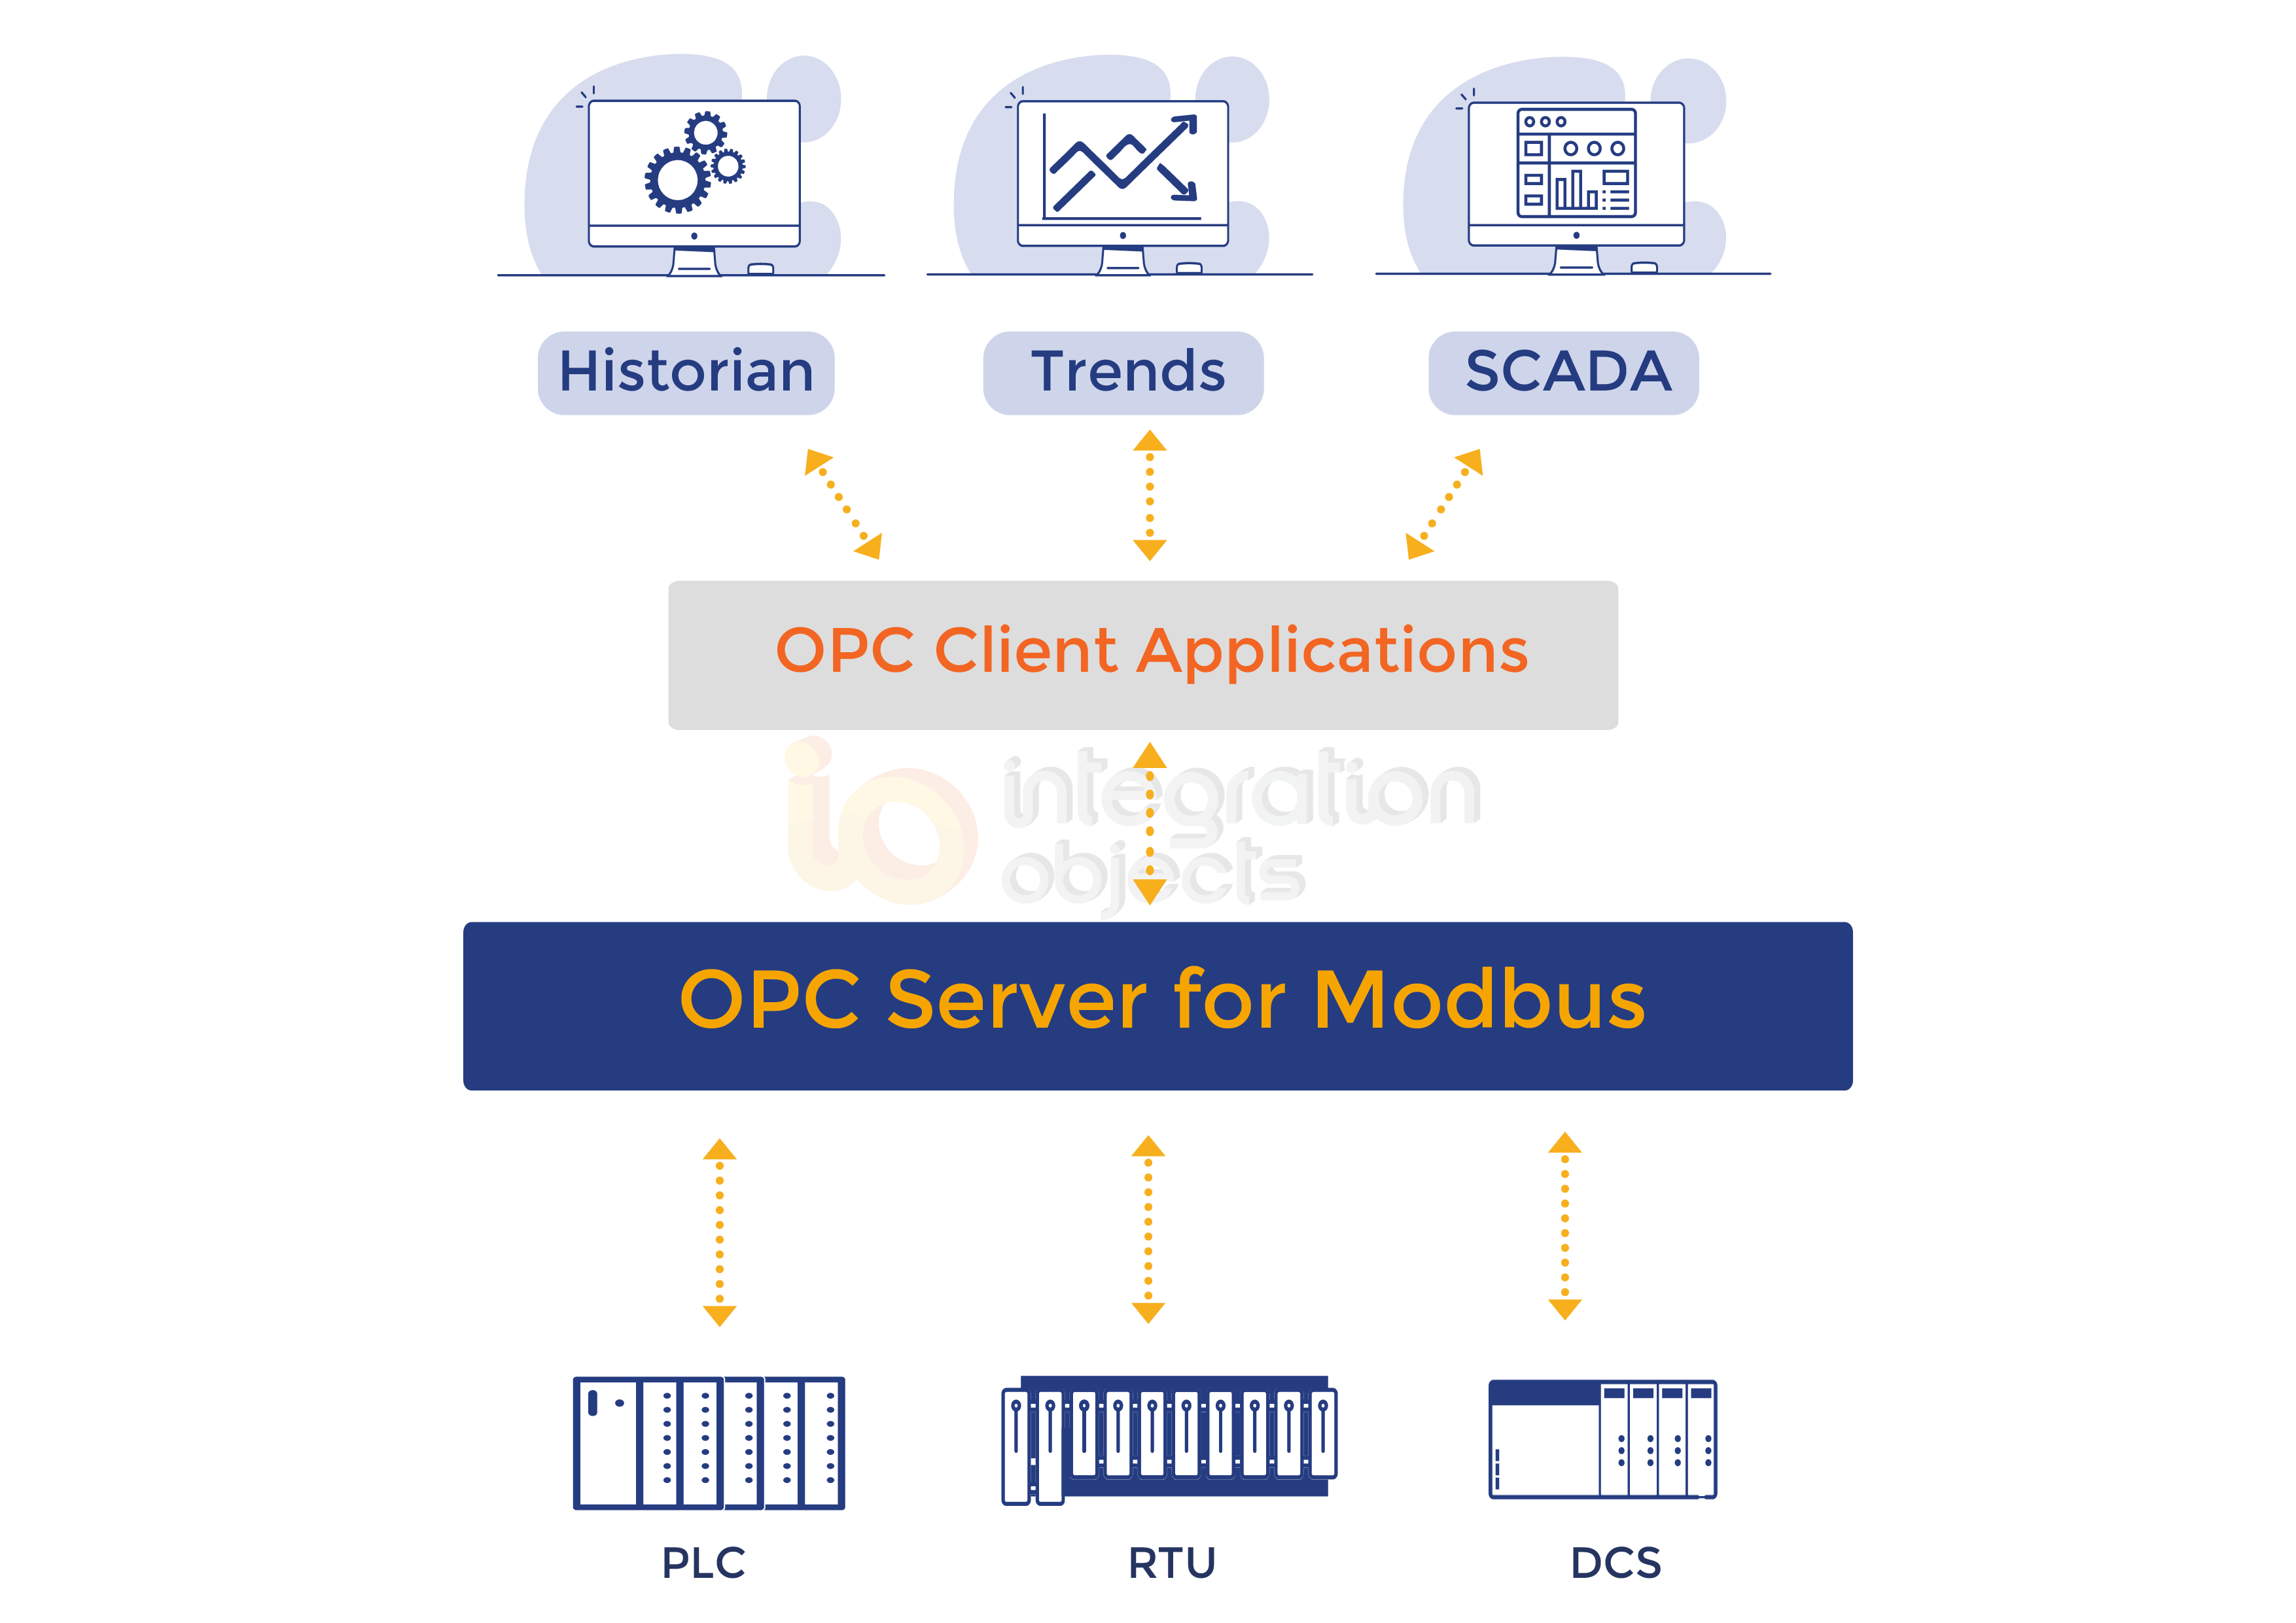 OPC Server for Modbus